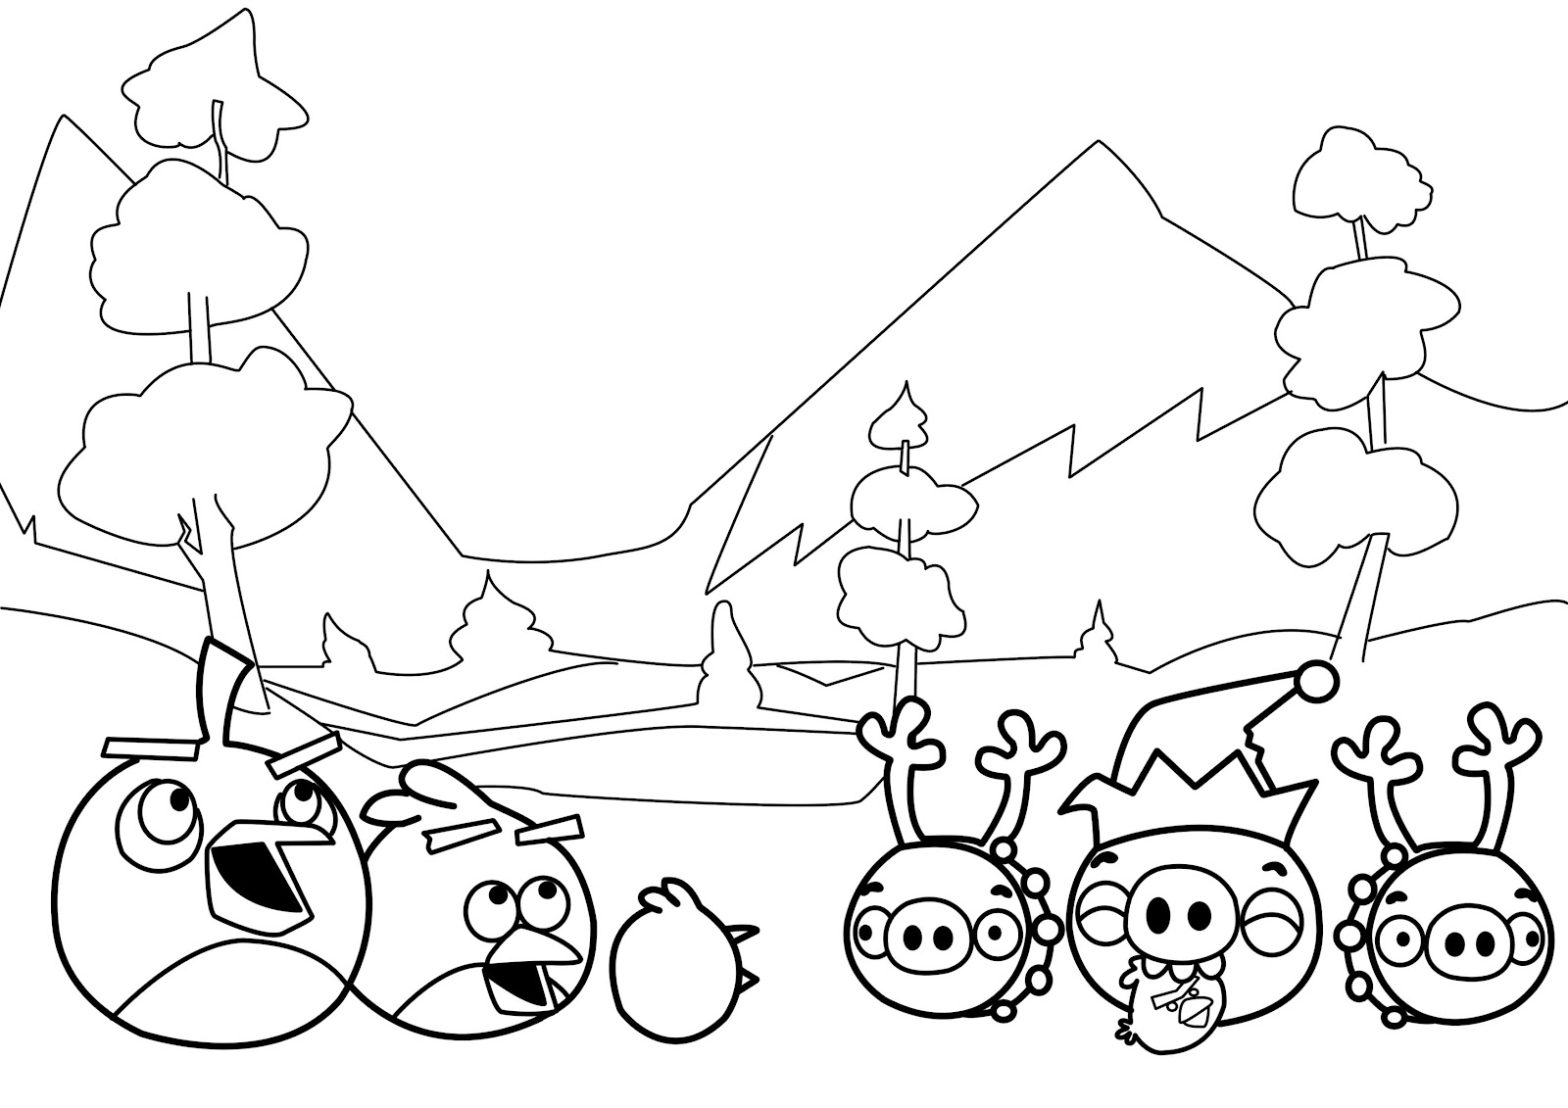 Раскраска с изображением героев из мультфильма Angry Birds